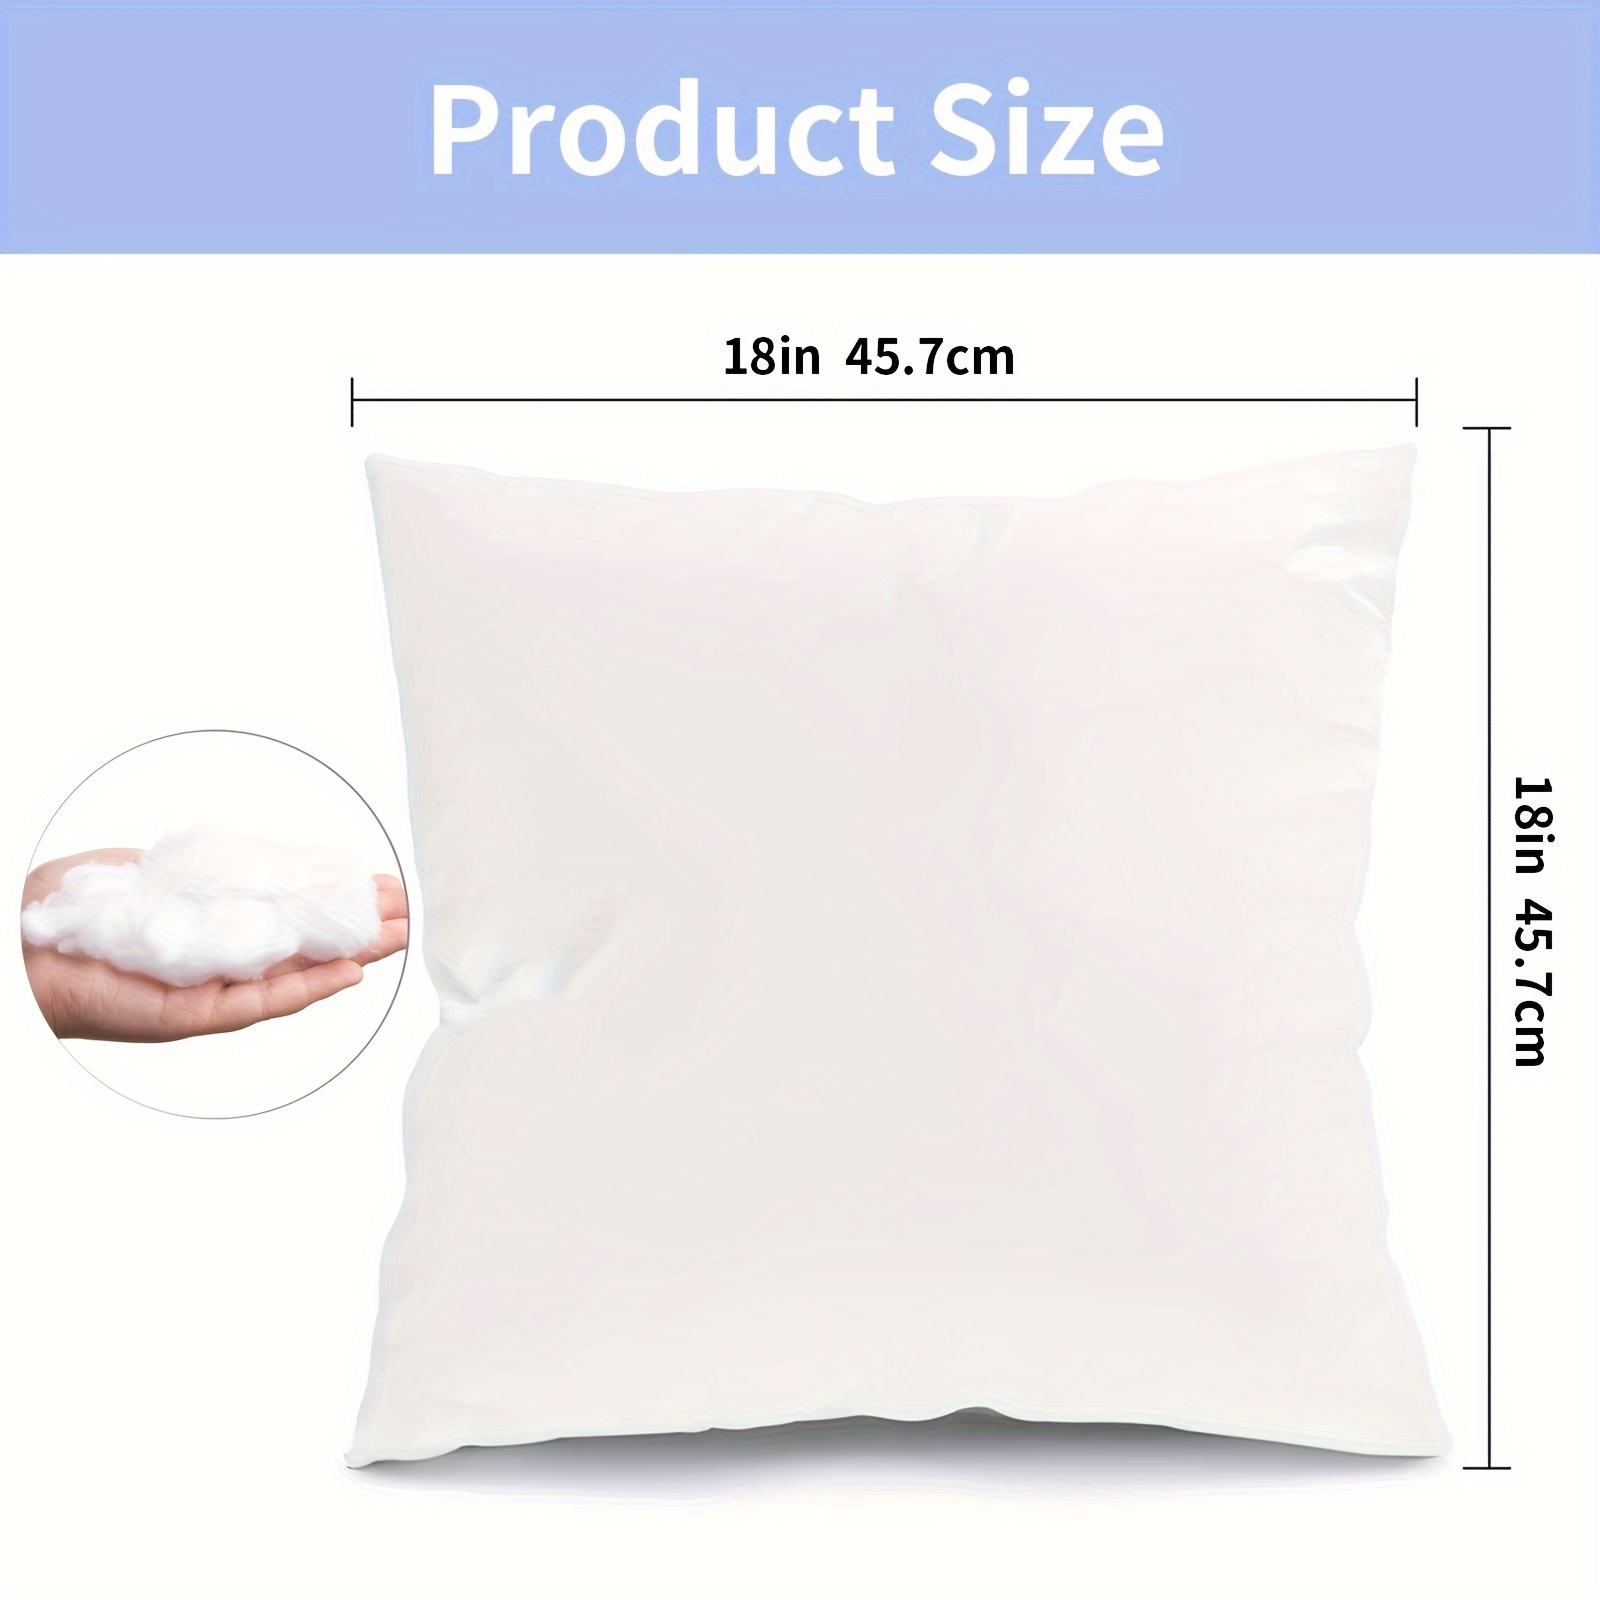 Pillow Insert 18x18 Inches Pillow Form Cushion Insert Pillow